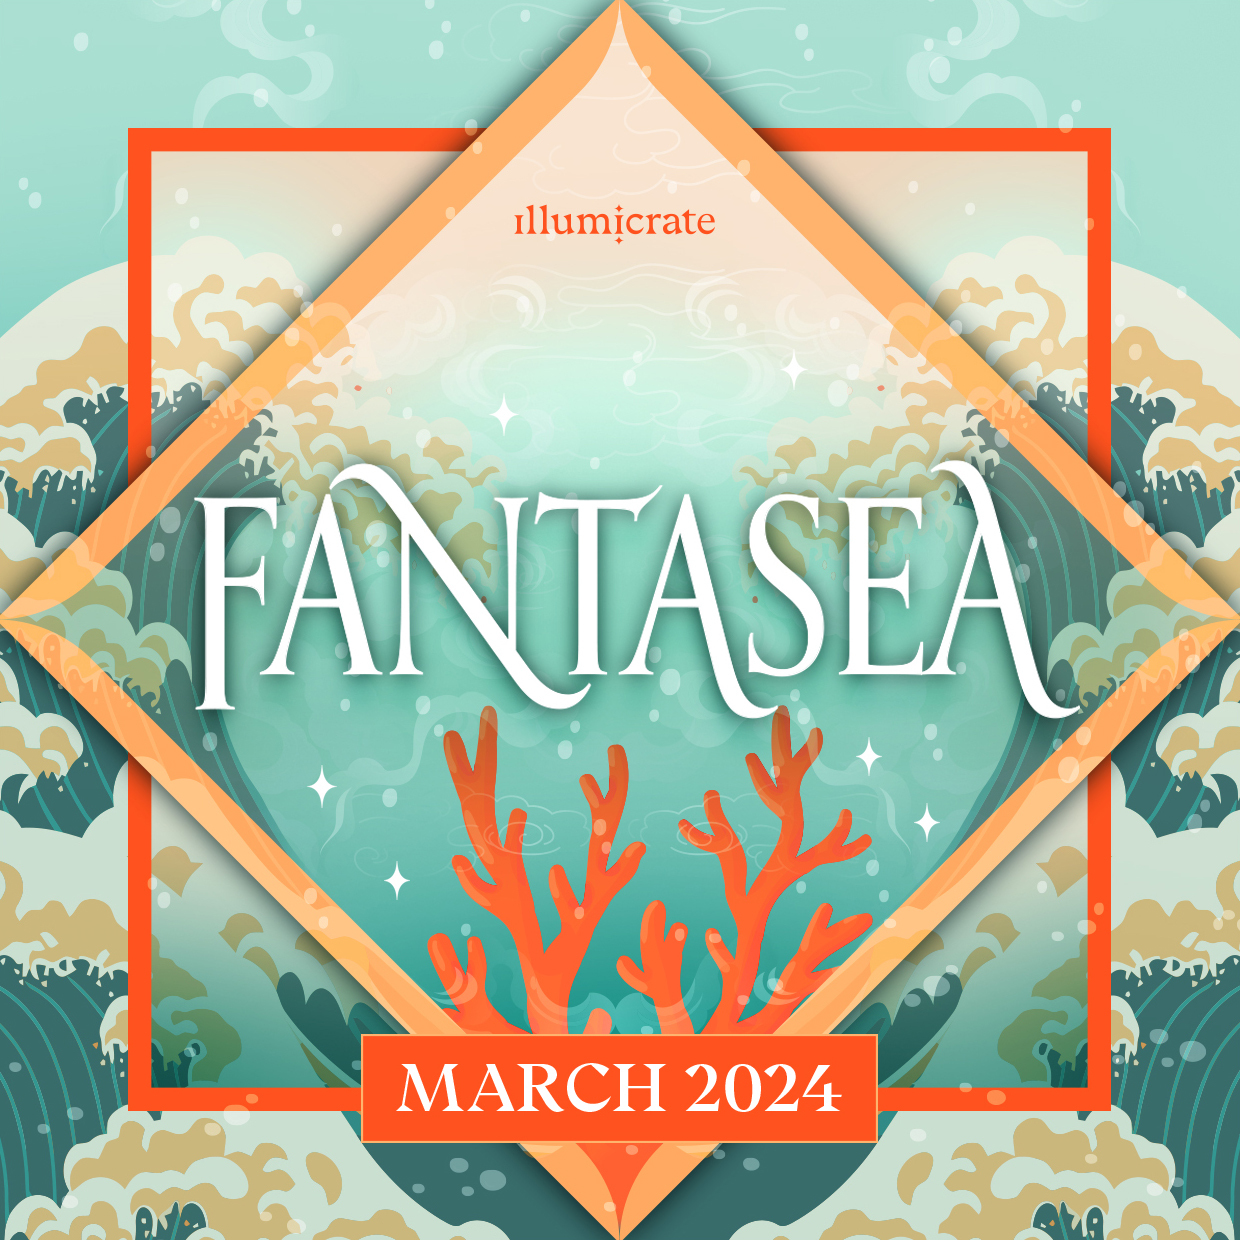 March 2024 Fantasea Illumicrate